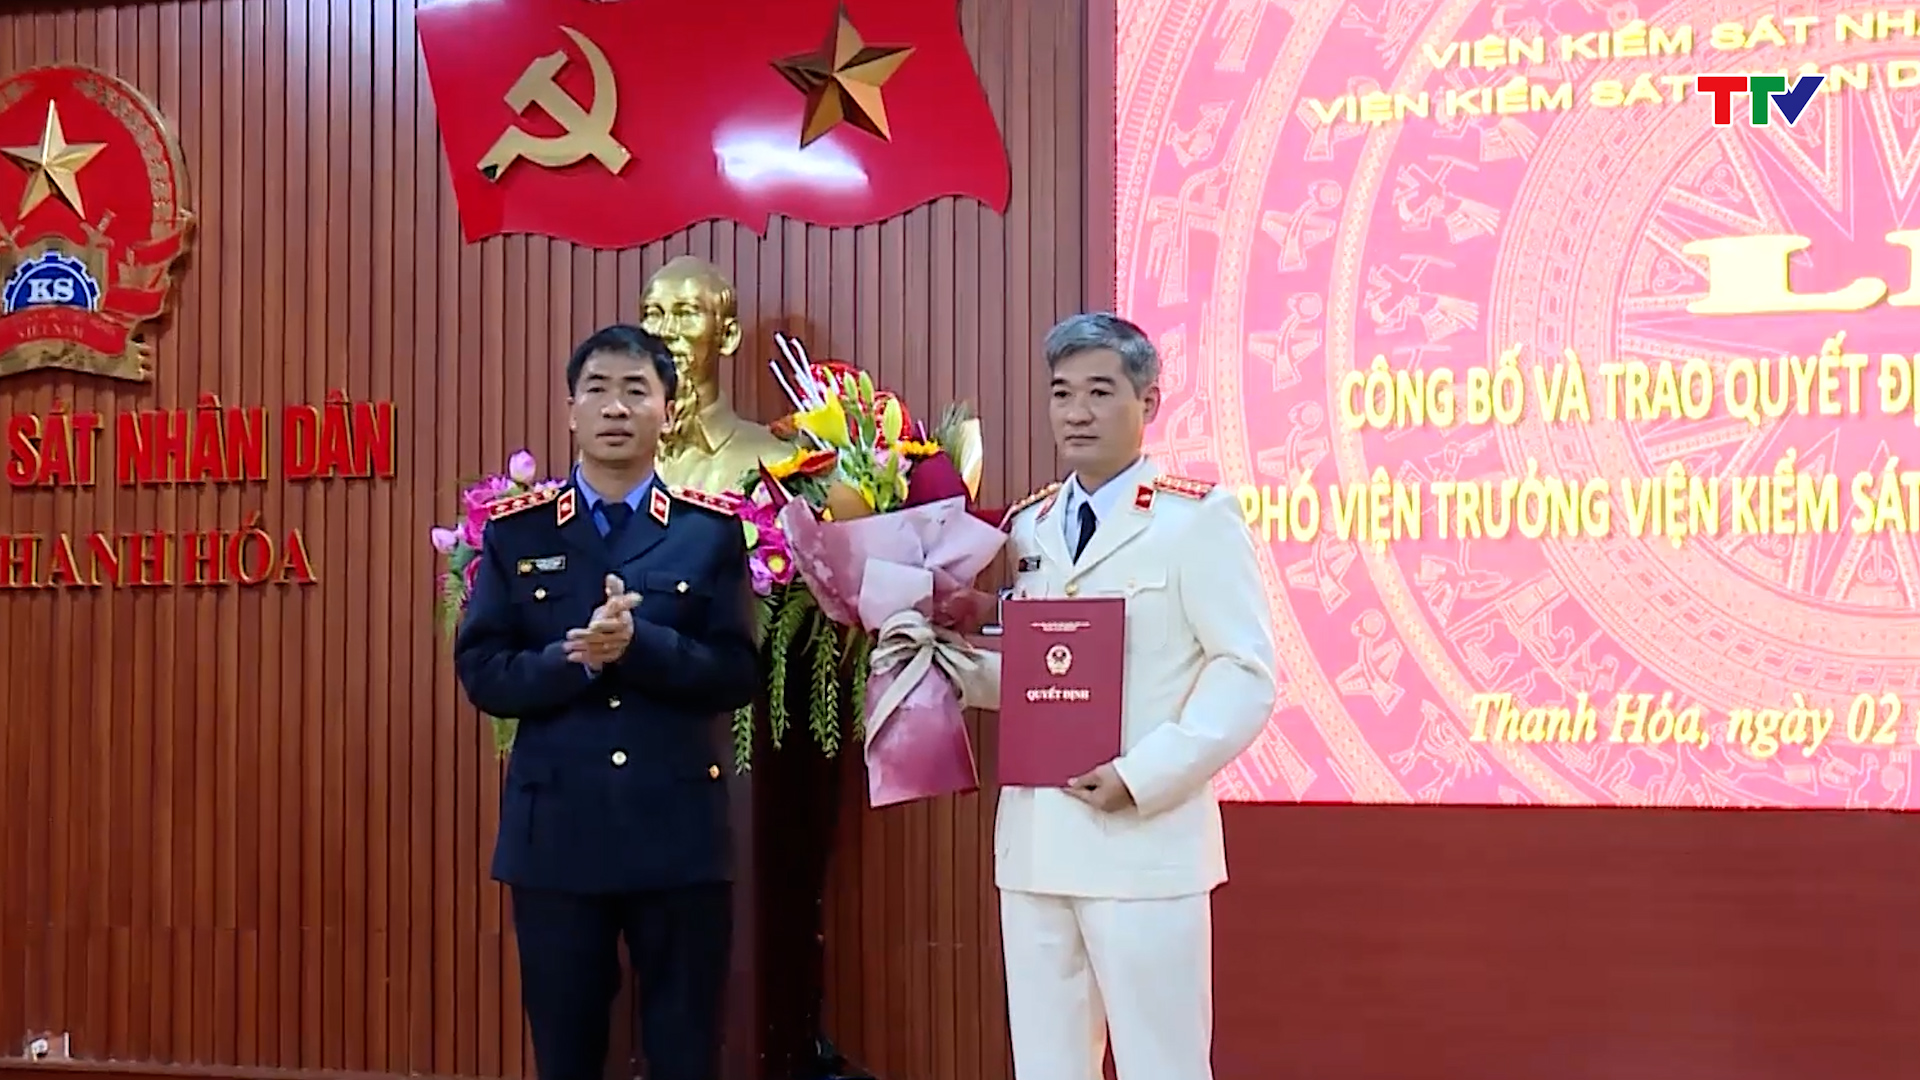 Lễ công bố và trao quyết định bổ nhiệm chức vụ Phó viện trưởng Viện kiểm sát Nhân dân tỉnh Thanh Hoá - Ảnh 1.